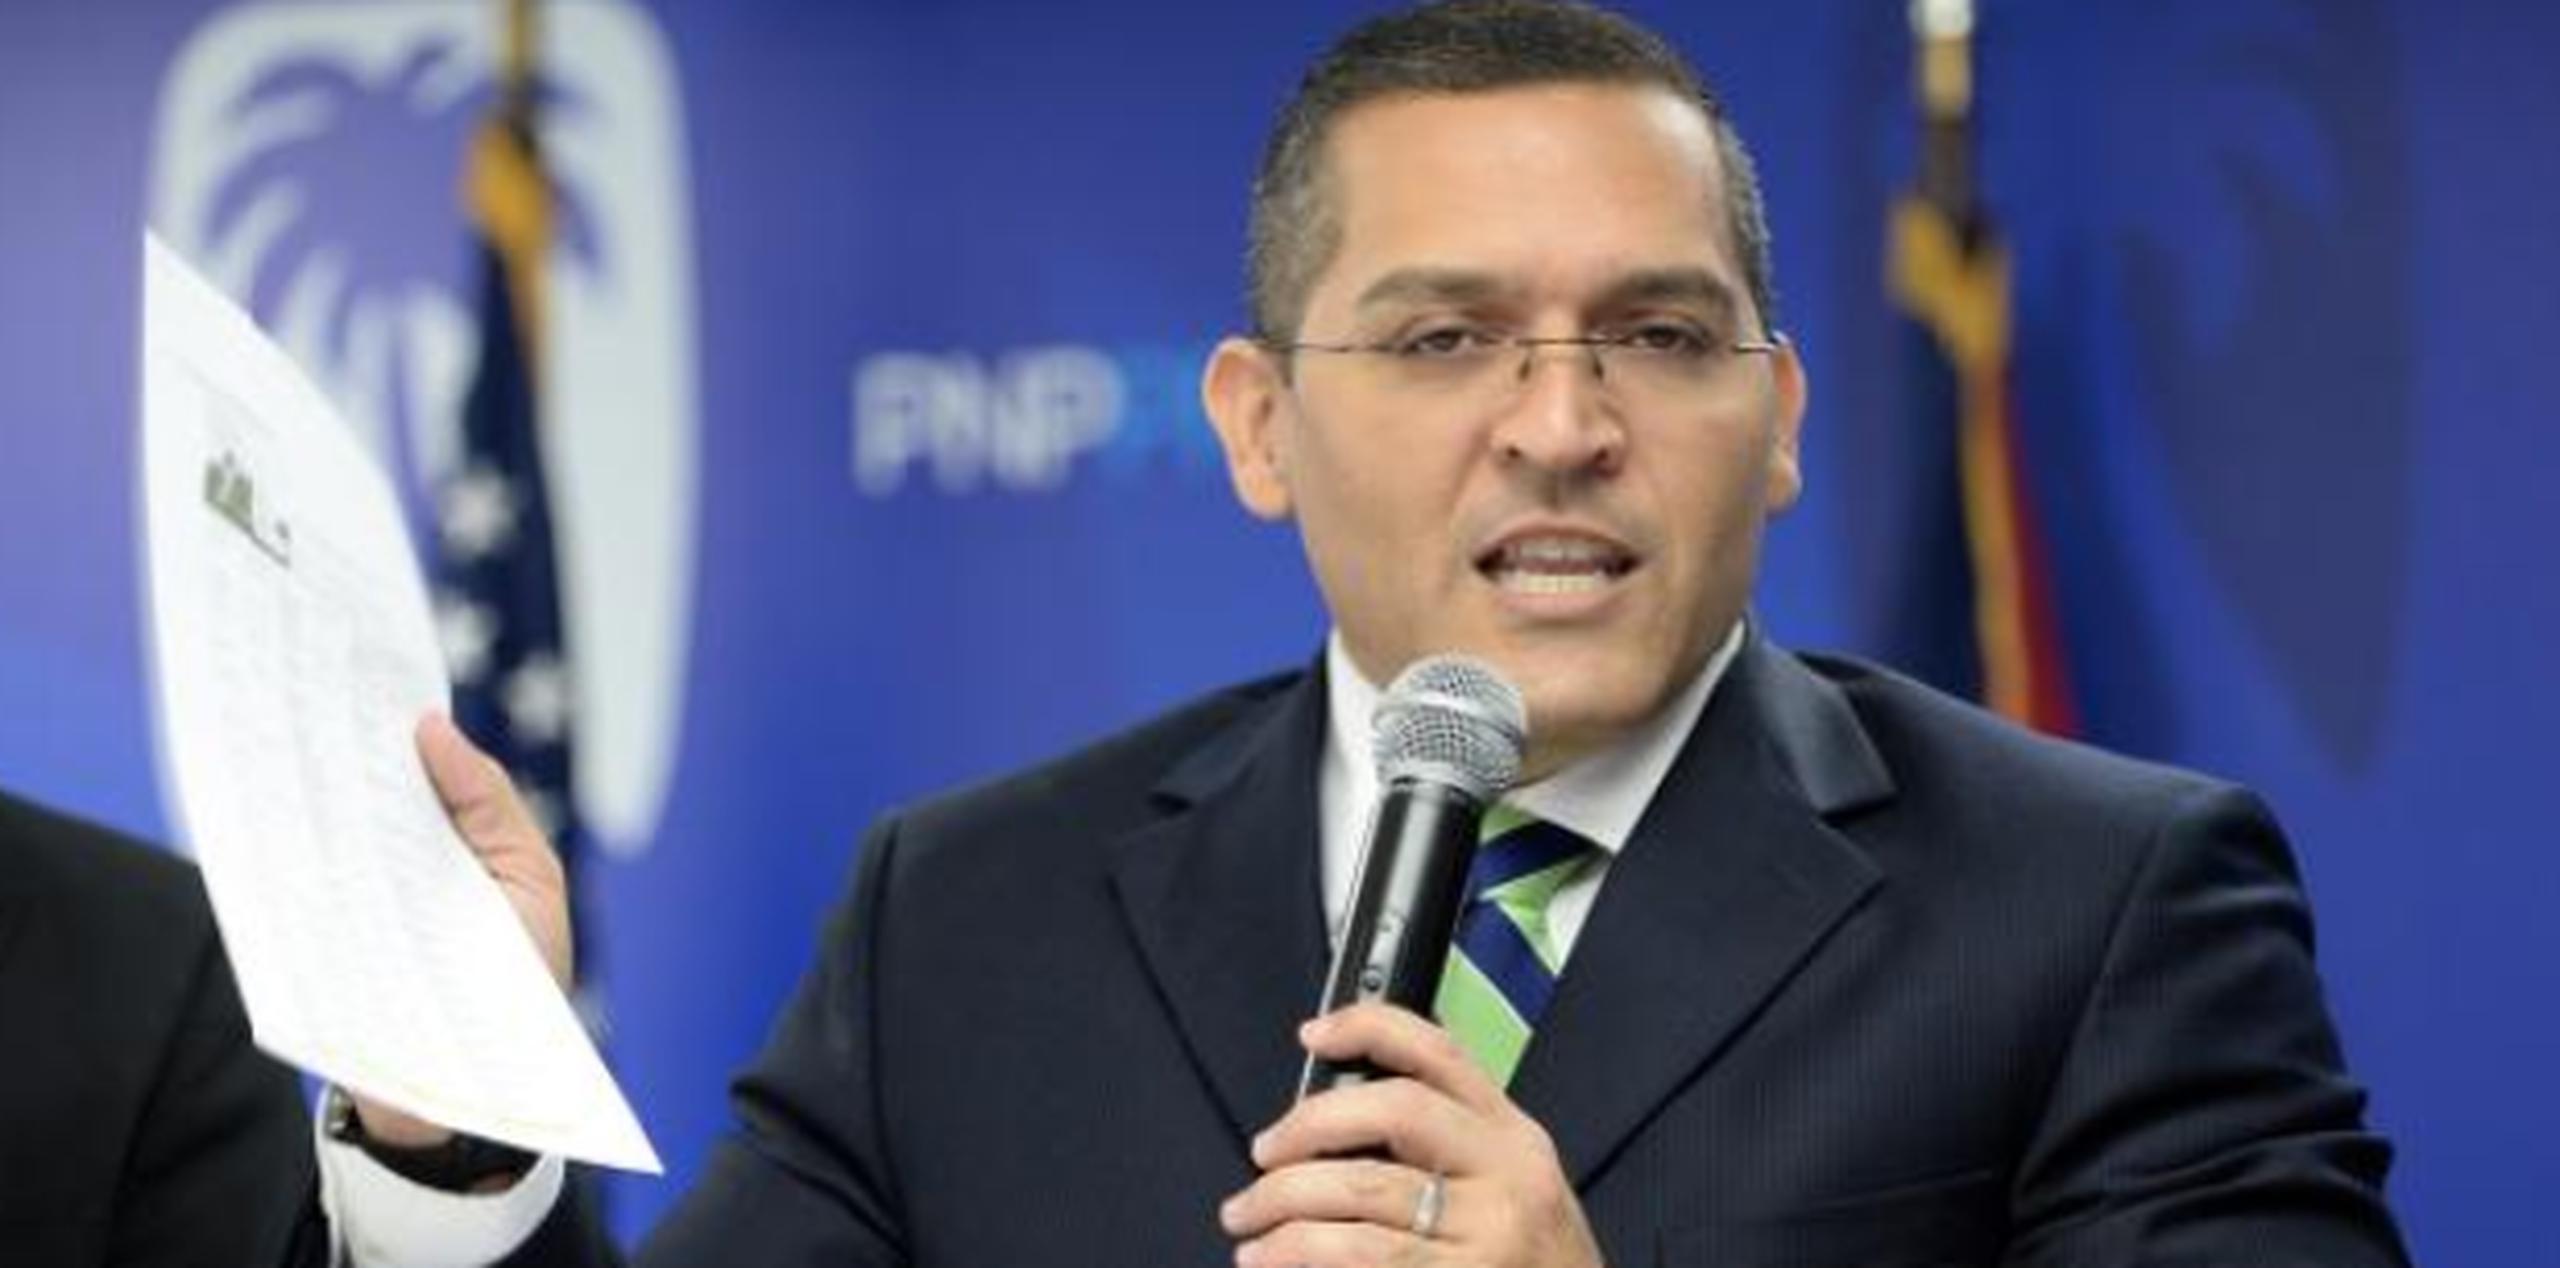 Meléndez: "Ya es hora de comenzar a trabajar por Puerto Rico y dejar atrás las improvisaciones del saliente gobierno". (Archivo)